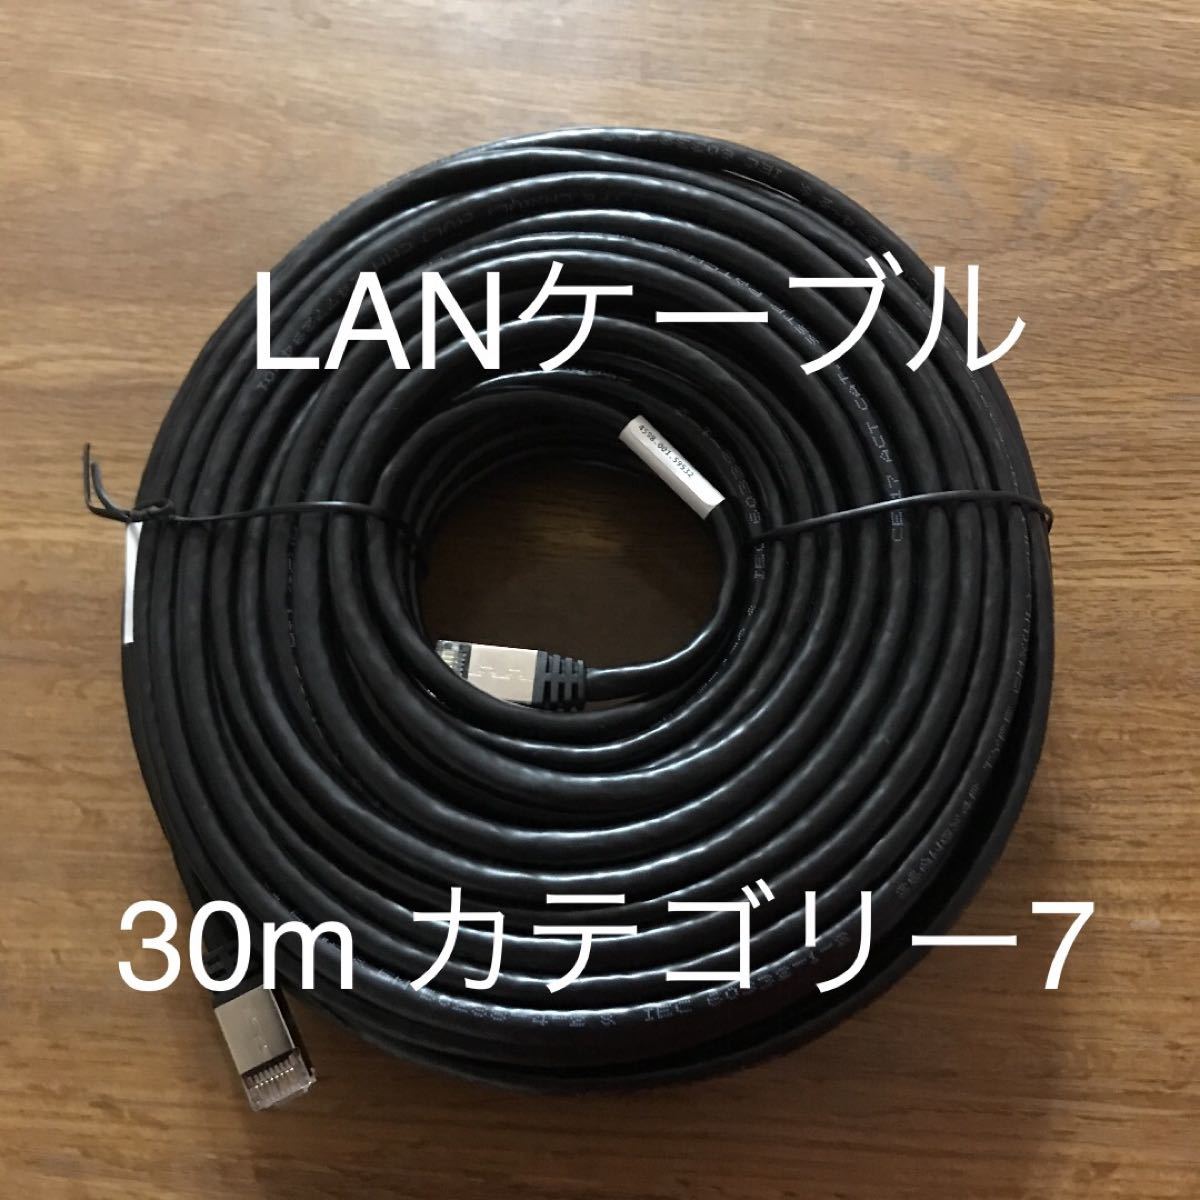 LANケーブル　30m (カテゴリー7)         LANケーブル ブラック